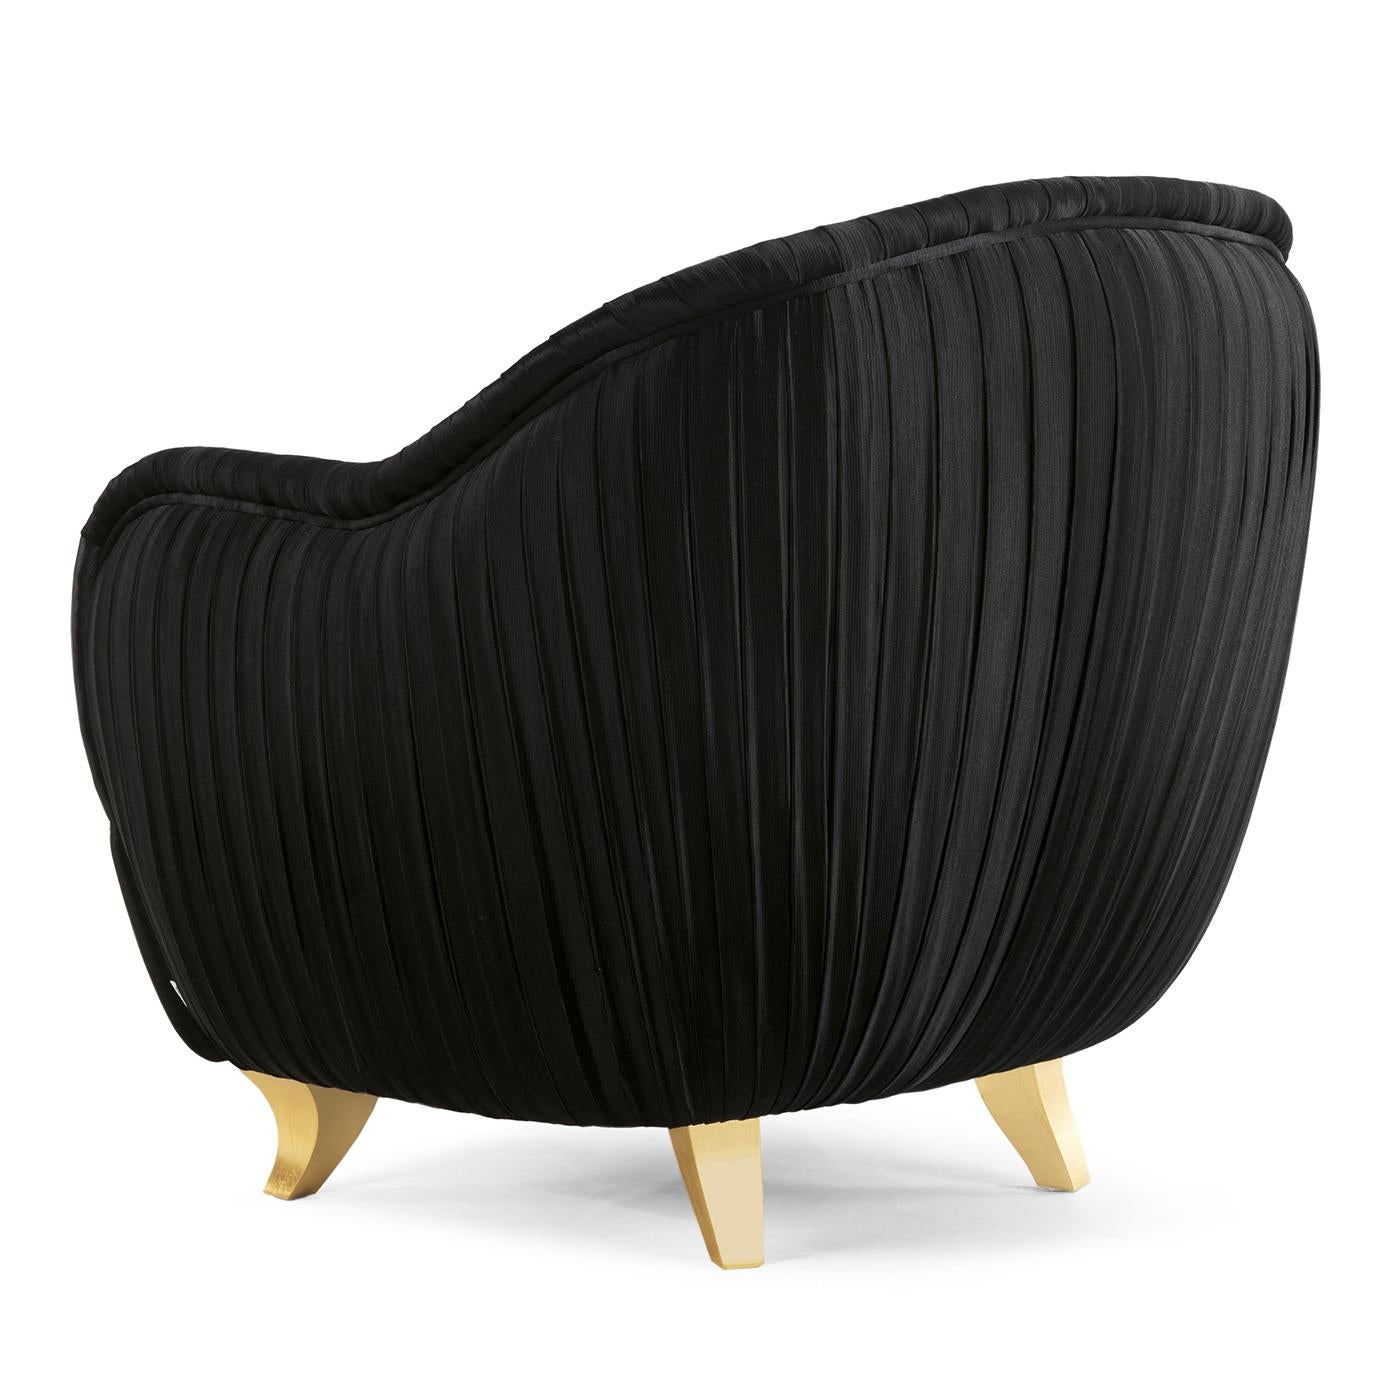 Dieser Sessel ist ein wunderschönes, funktionelles Dekorationsstück, das Komfort mit einem eleganten Design verbindet. Er ist mit einem exquisiten, von Hand gefalteten Stoff bezogen und eignet sich daher ideal, um auch in der Mitte eines Raumes